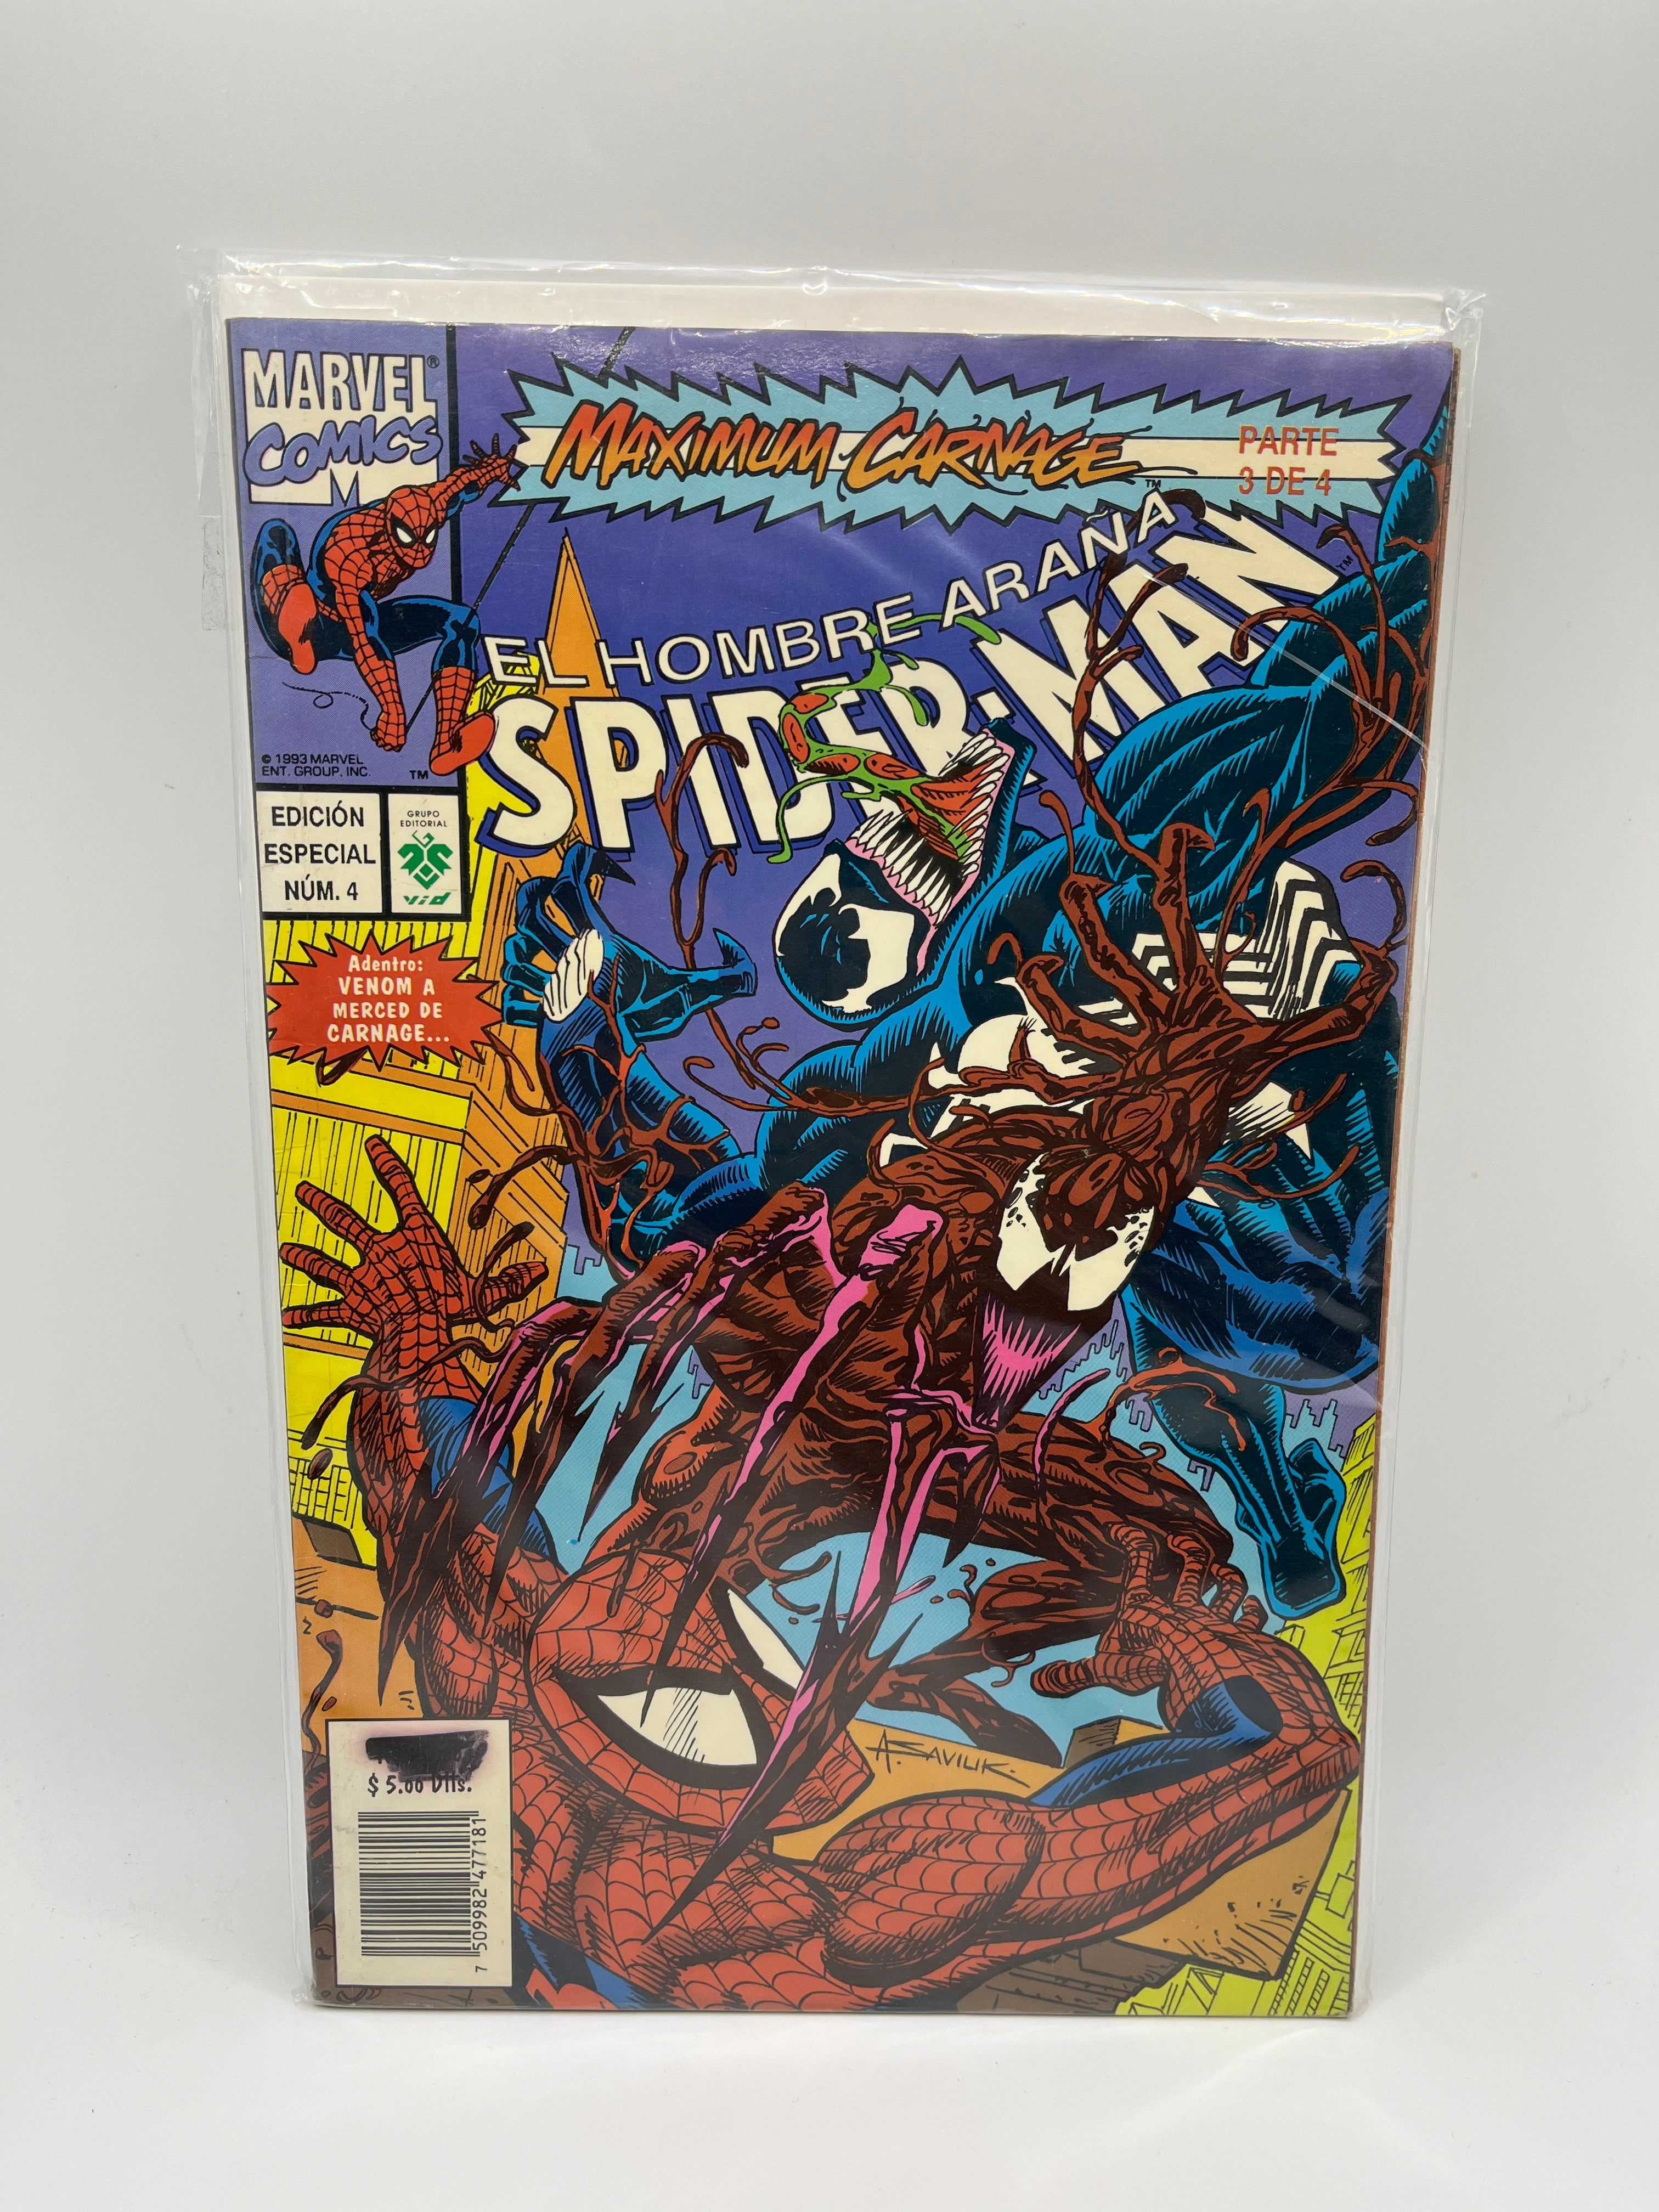 El Hombre Araña Spider-Man Maximum Carnage Parte 3 de 4 Marvel Comics Editorial ViD Español